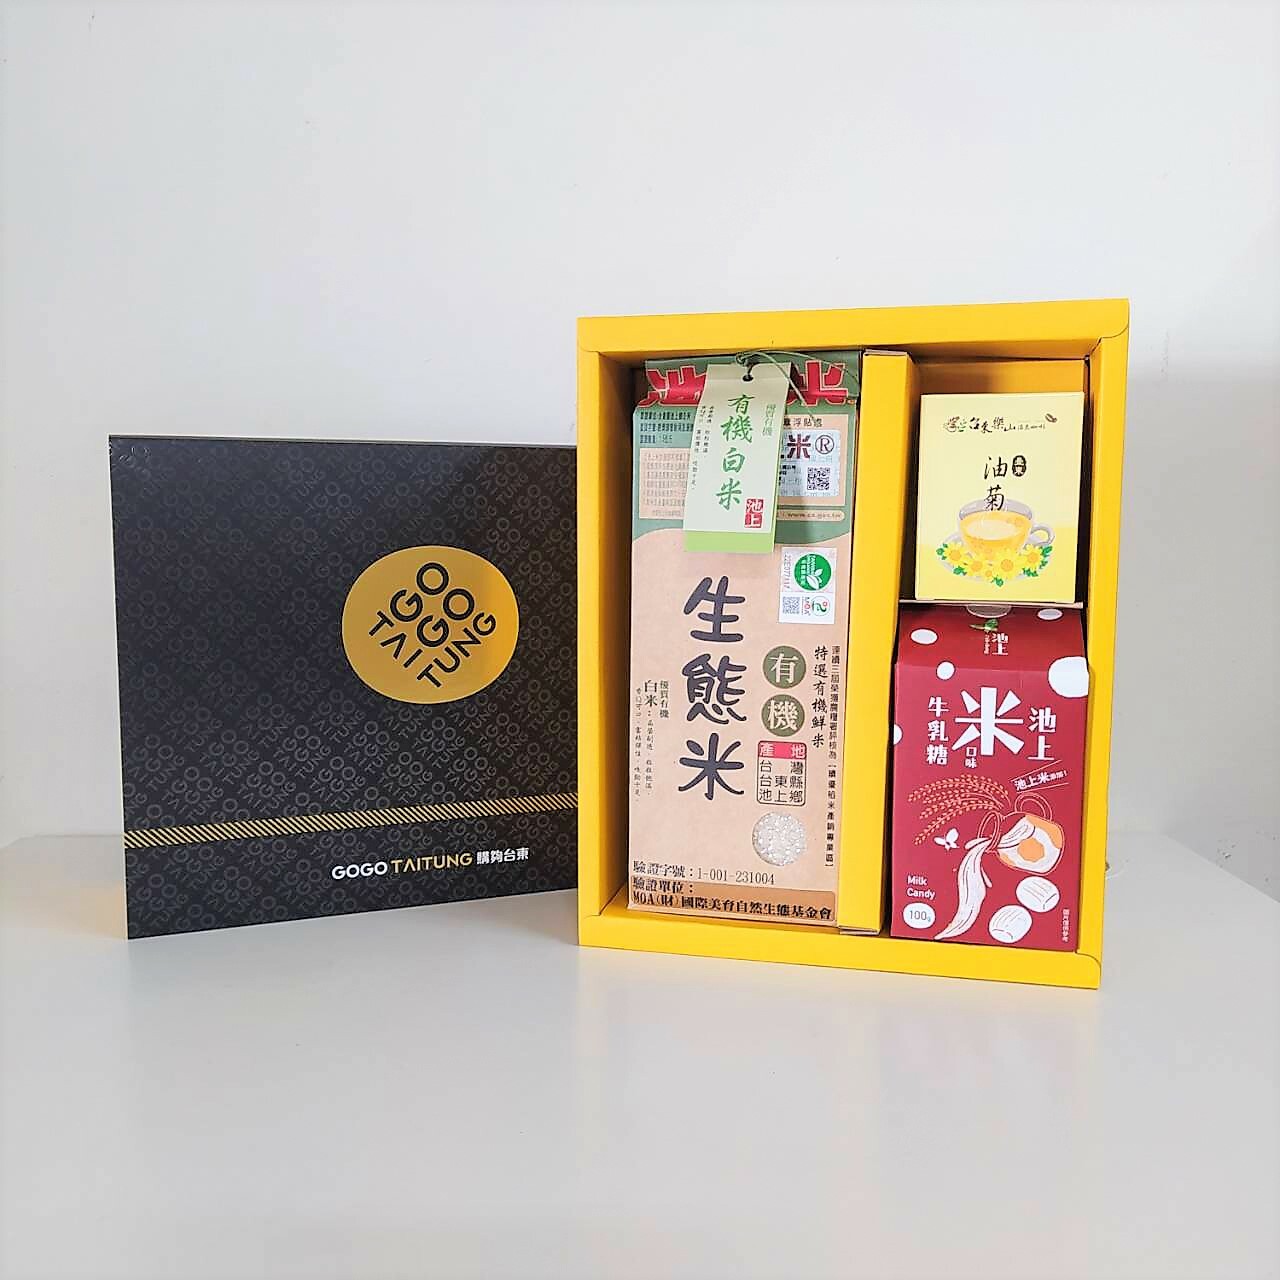 【限定禮盒】池米之花禮盒-有機生態白米+池上米乳糖+小油菊